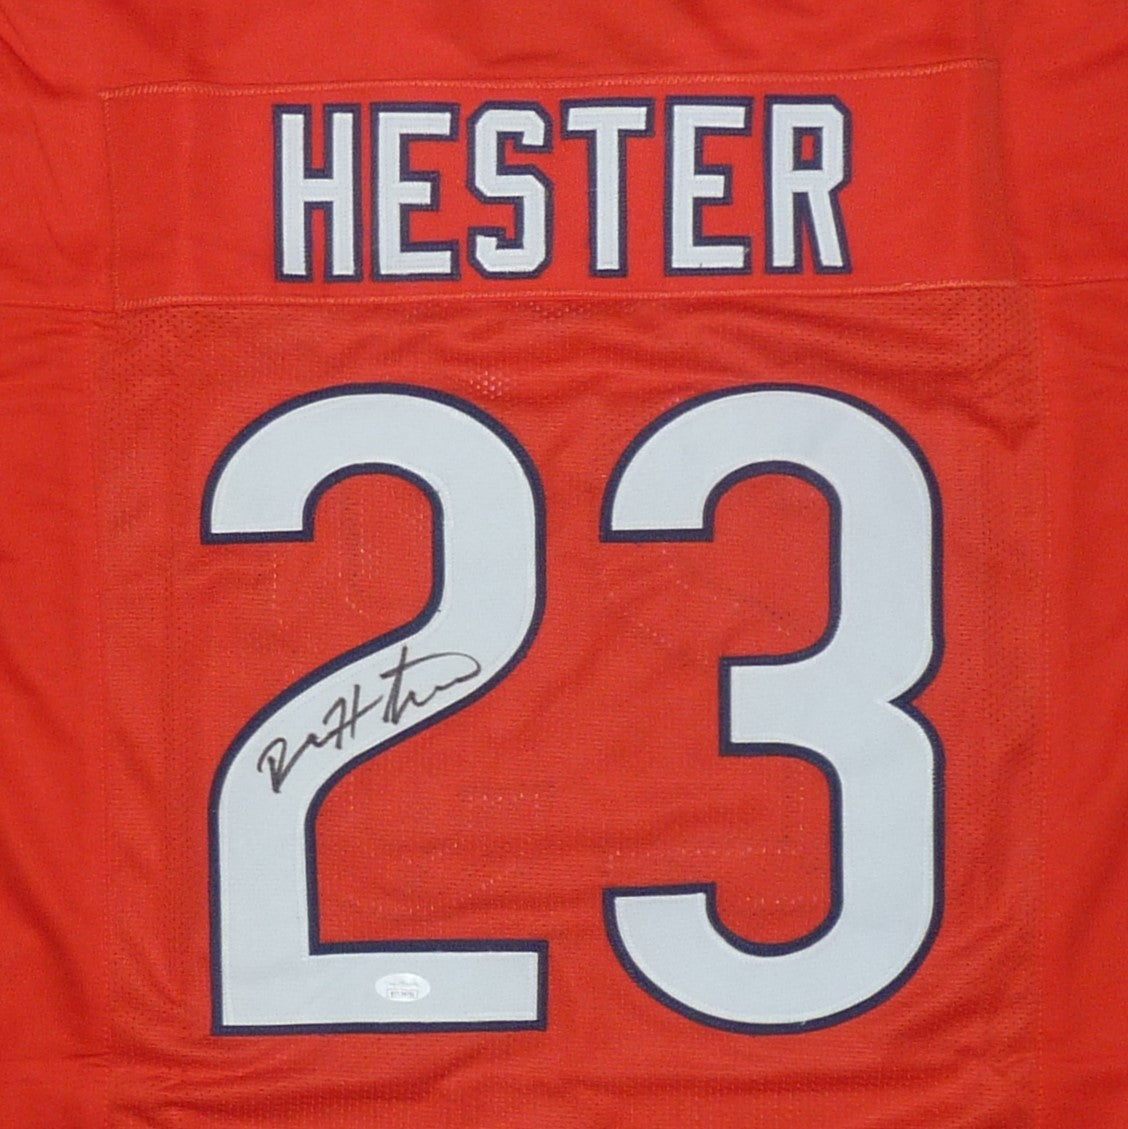 Devin Hester Autographed Chicago (Orange #23) Custom Jersey - JSA